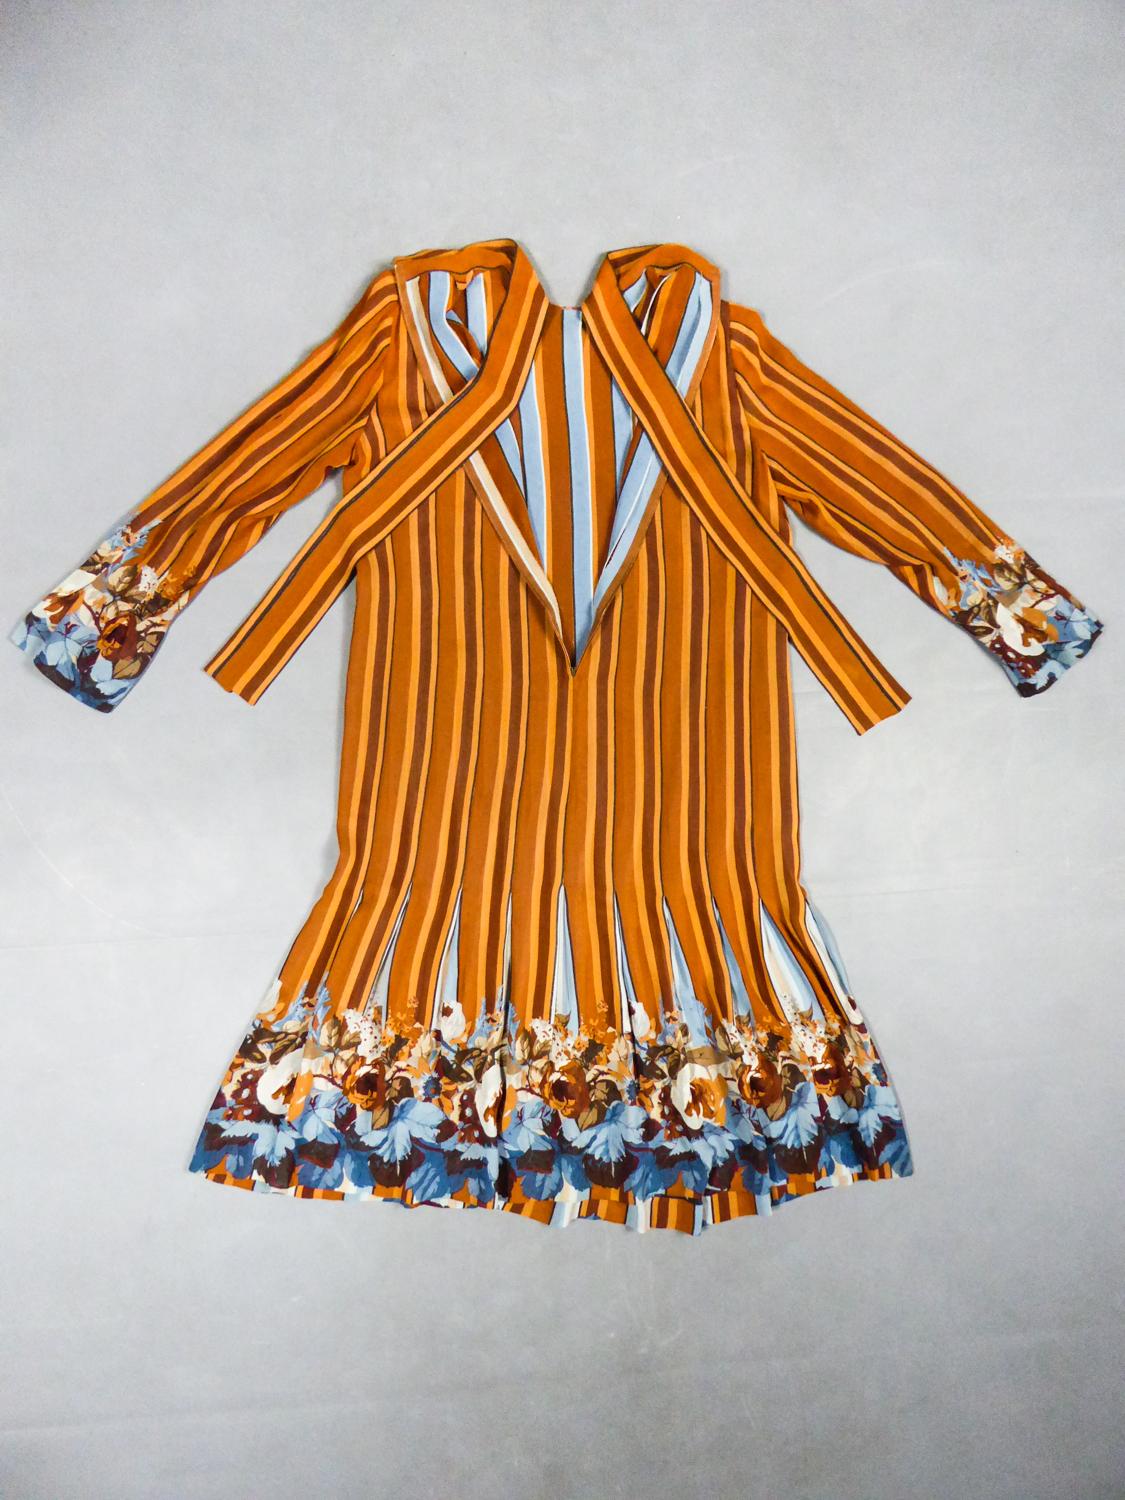 Circa 1970
France

Élégante robe intemporelle en crêpe de soie imprimé d'un créateur français anonyme datant des années 1970. Robe droite à manches longues et col ras du cou avec de longues languettes à nouer. Étonnant travail de coutures pliées en